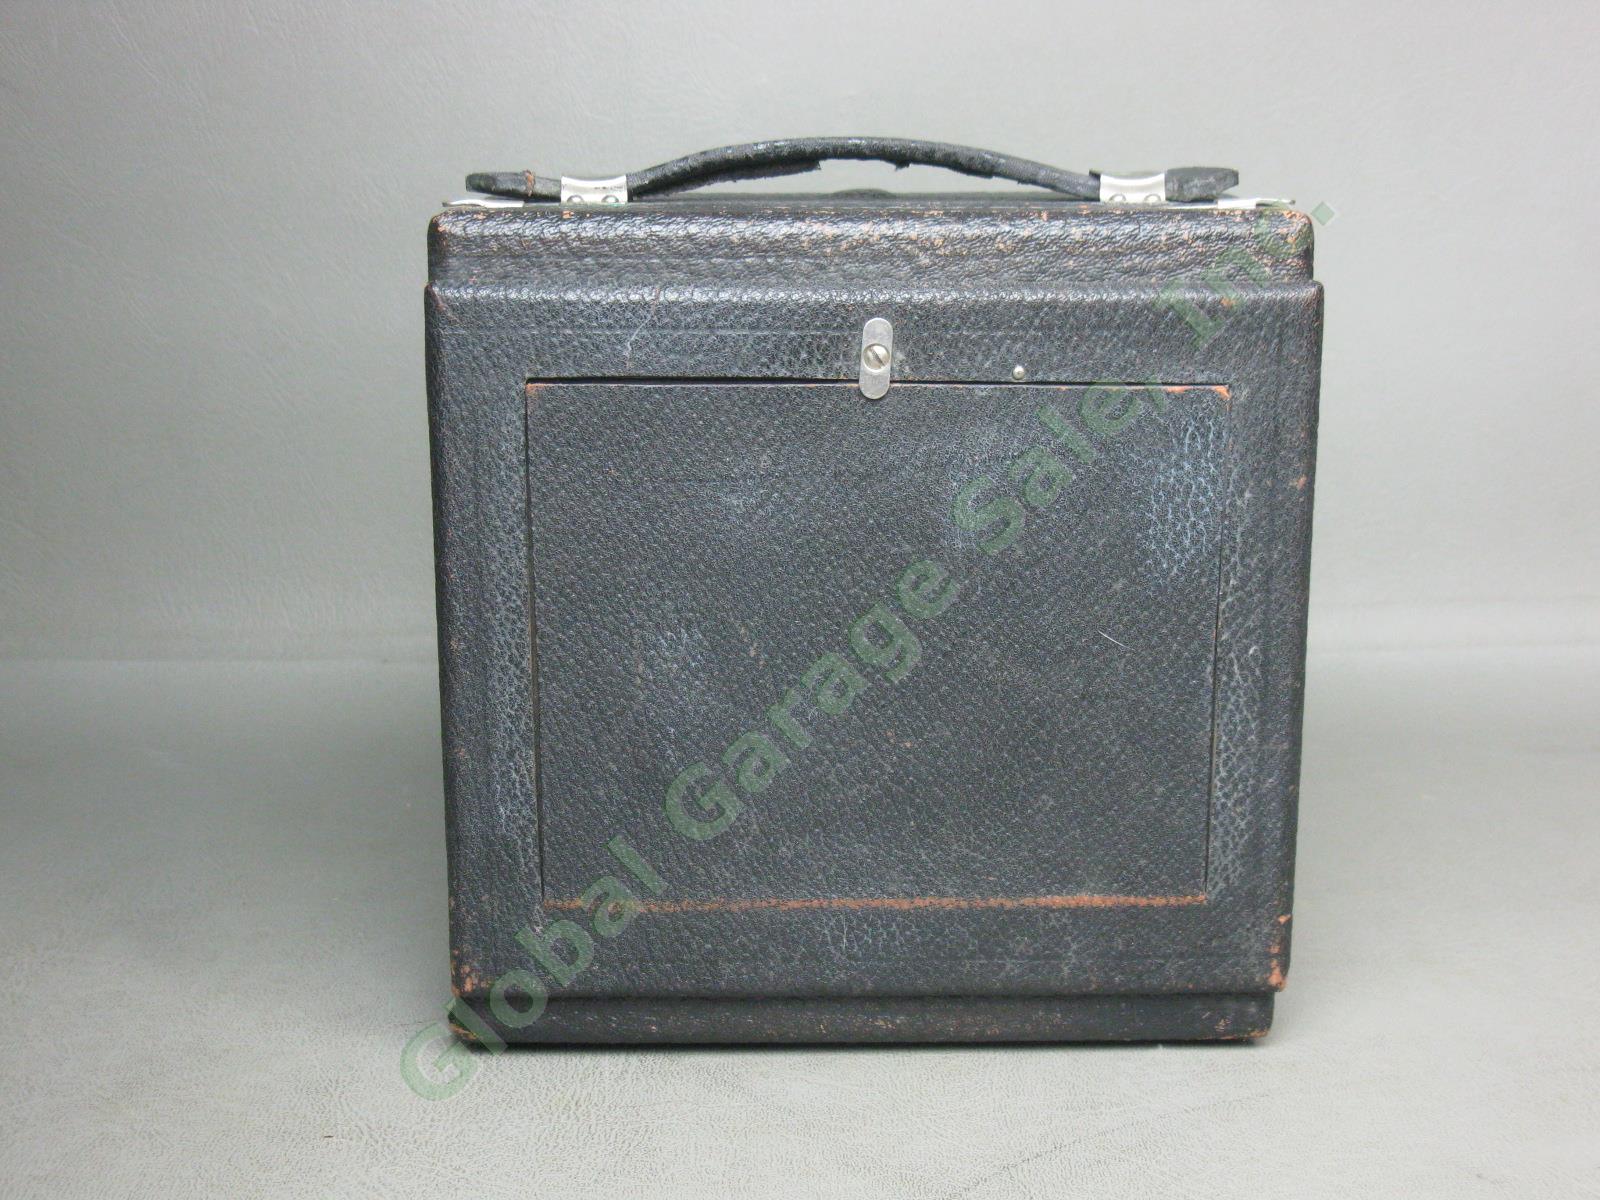 Antique Gundlach 4x5 Folding Camera Wollensack Betax No 2 f/6.3 Series IV Lens 4